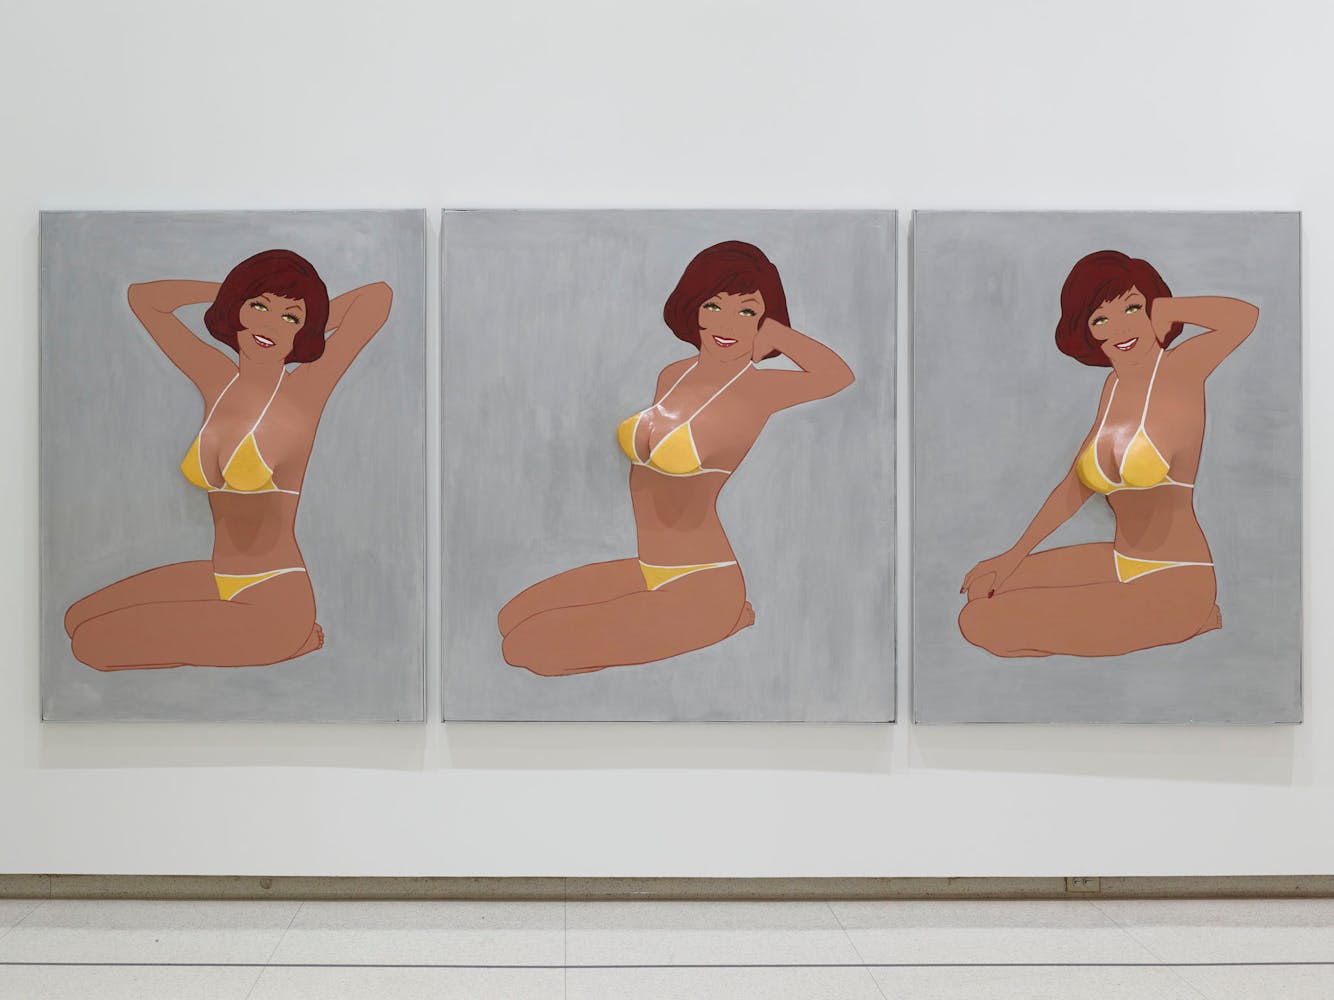 View of the exhibition International Pop, 2015; Marjorie Strider, Triptych II, Beach Girl, 1963